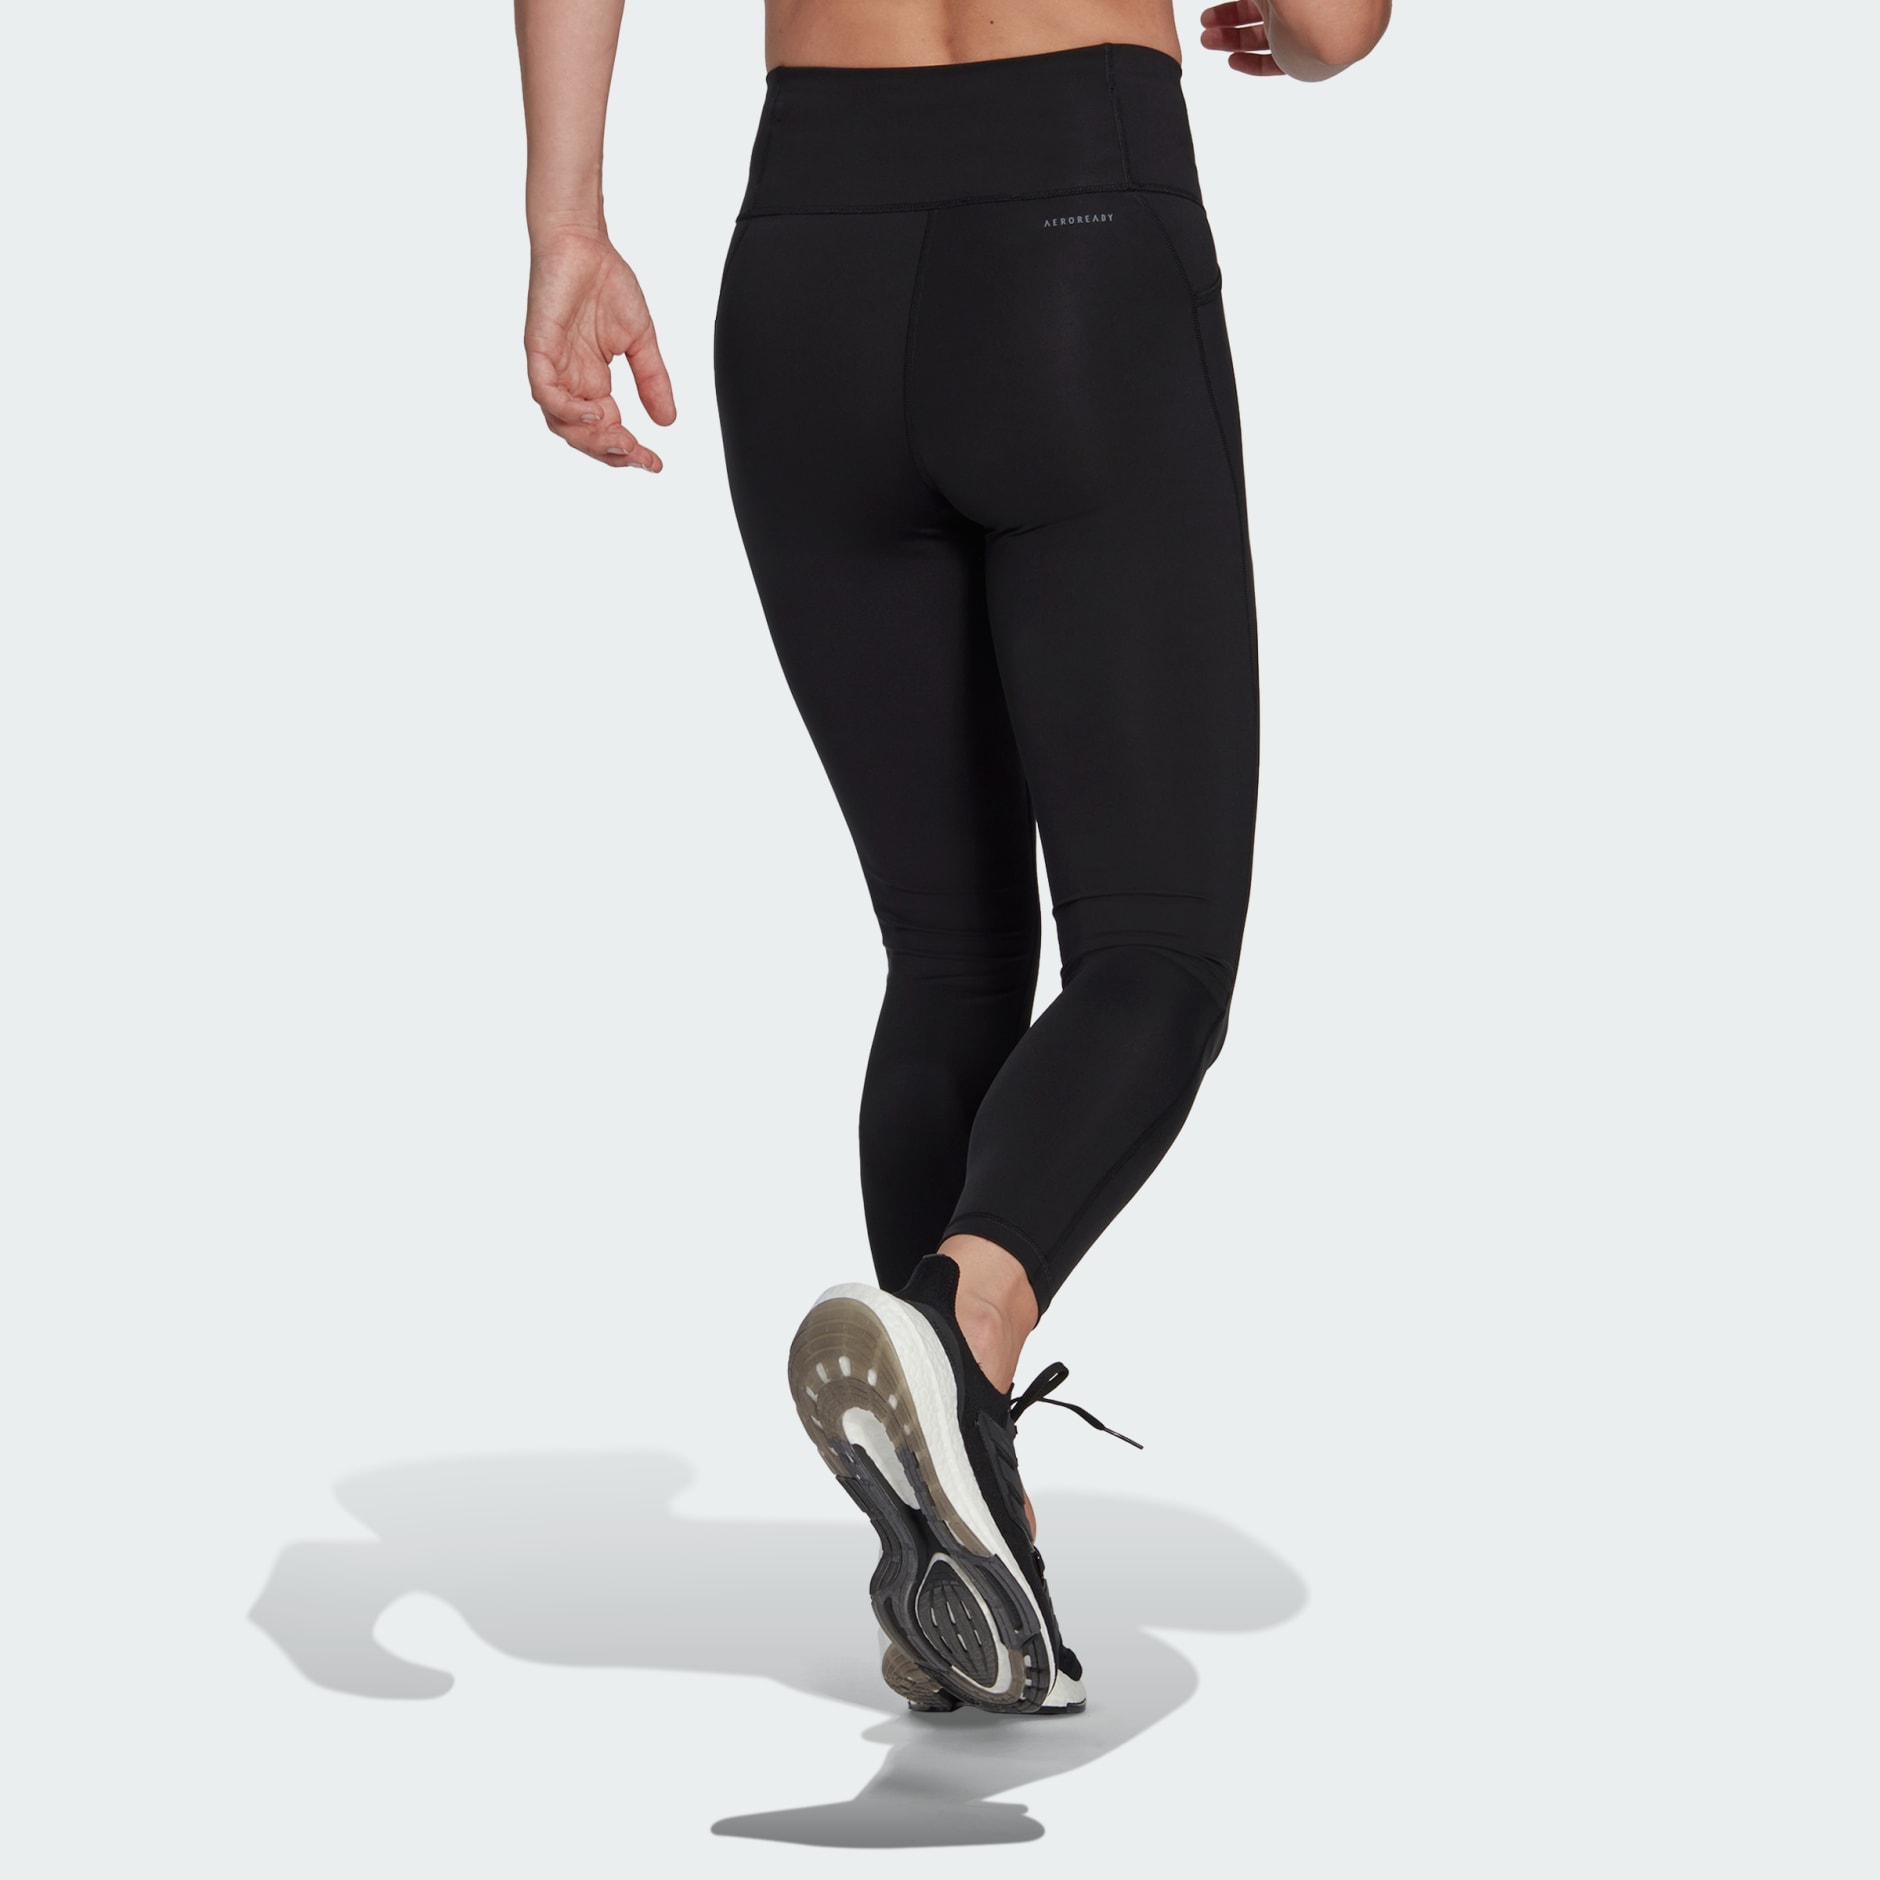 Women's Clothing - Running Essentials 7/8 Leggings - Black